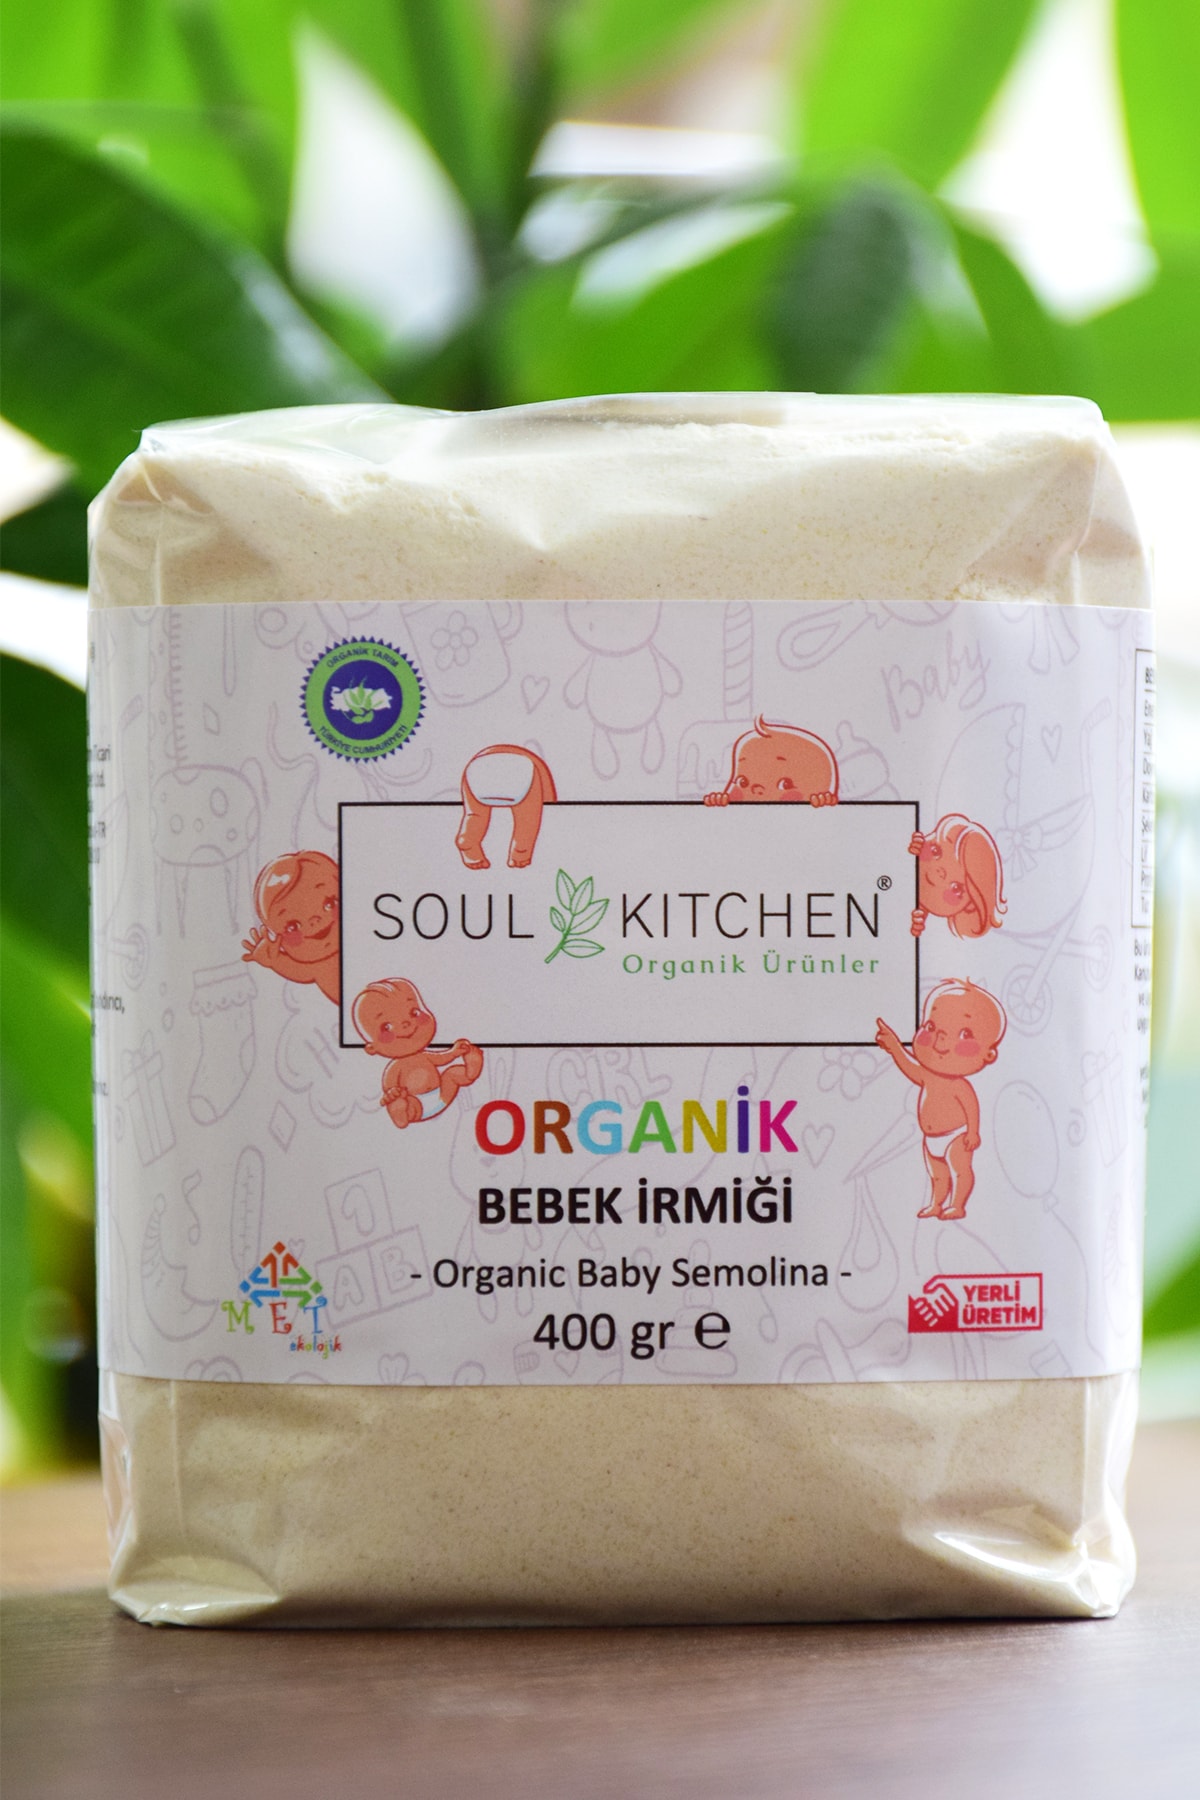 Soul Kitchen Organik Ürünler Organik Bebek Irmiği 400gr